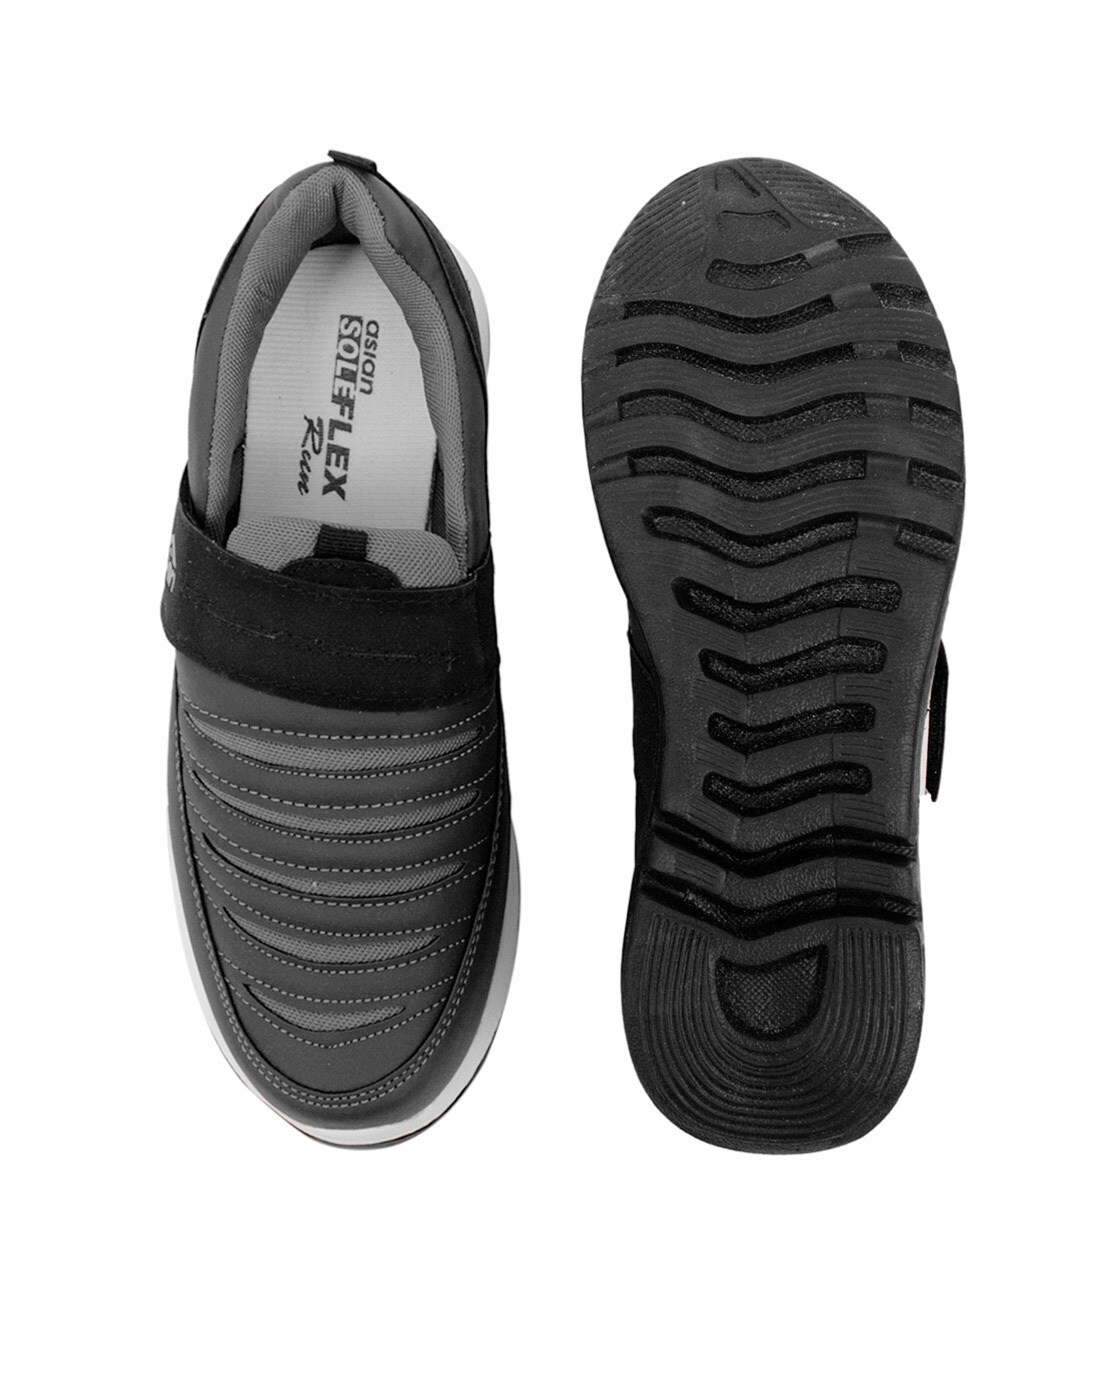 asian sole flex shoes